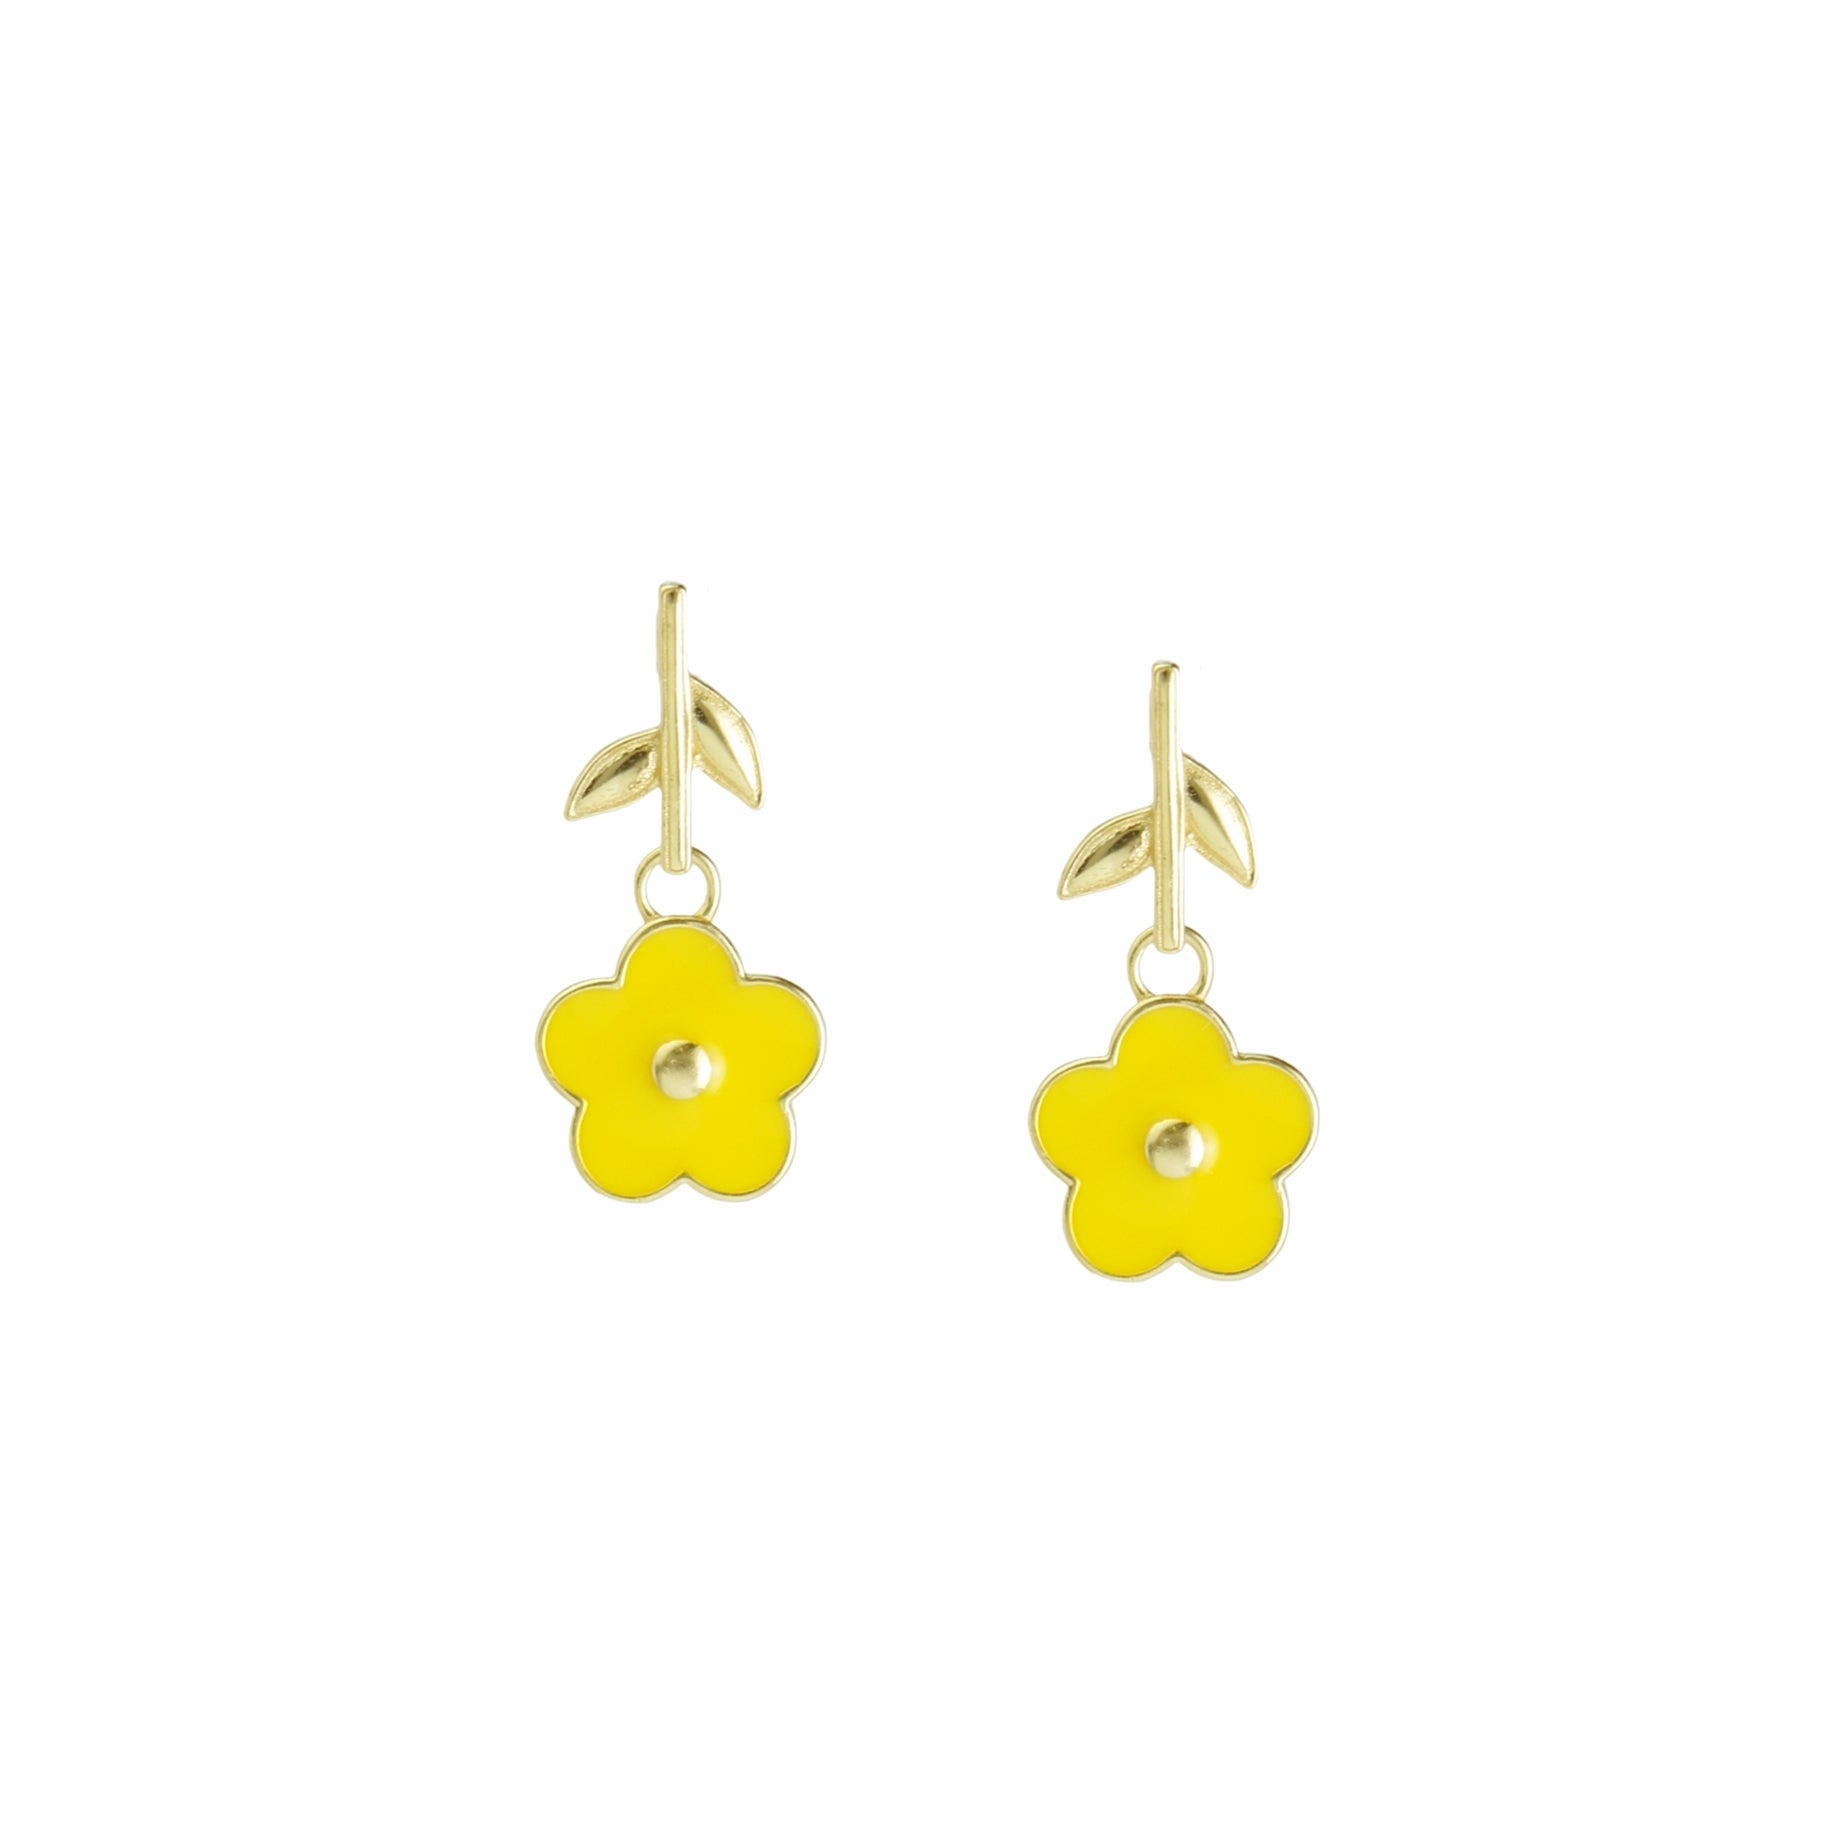 Flower Power Enamel Flower Drop Earrings with Gold Vermeil Stem Studs